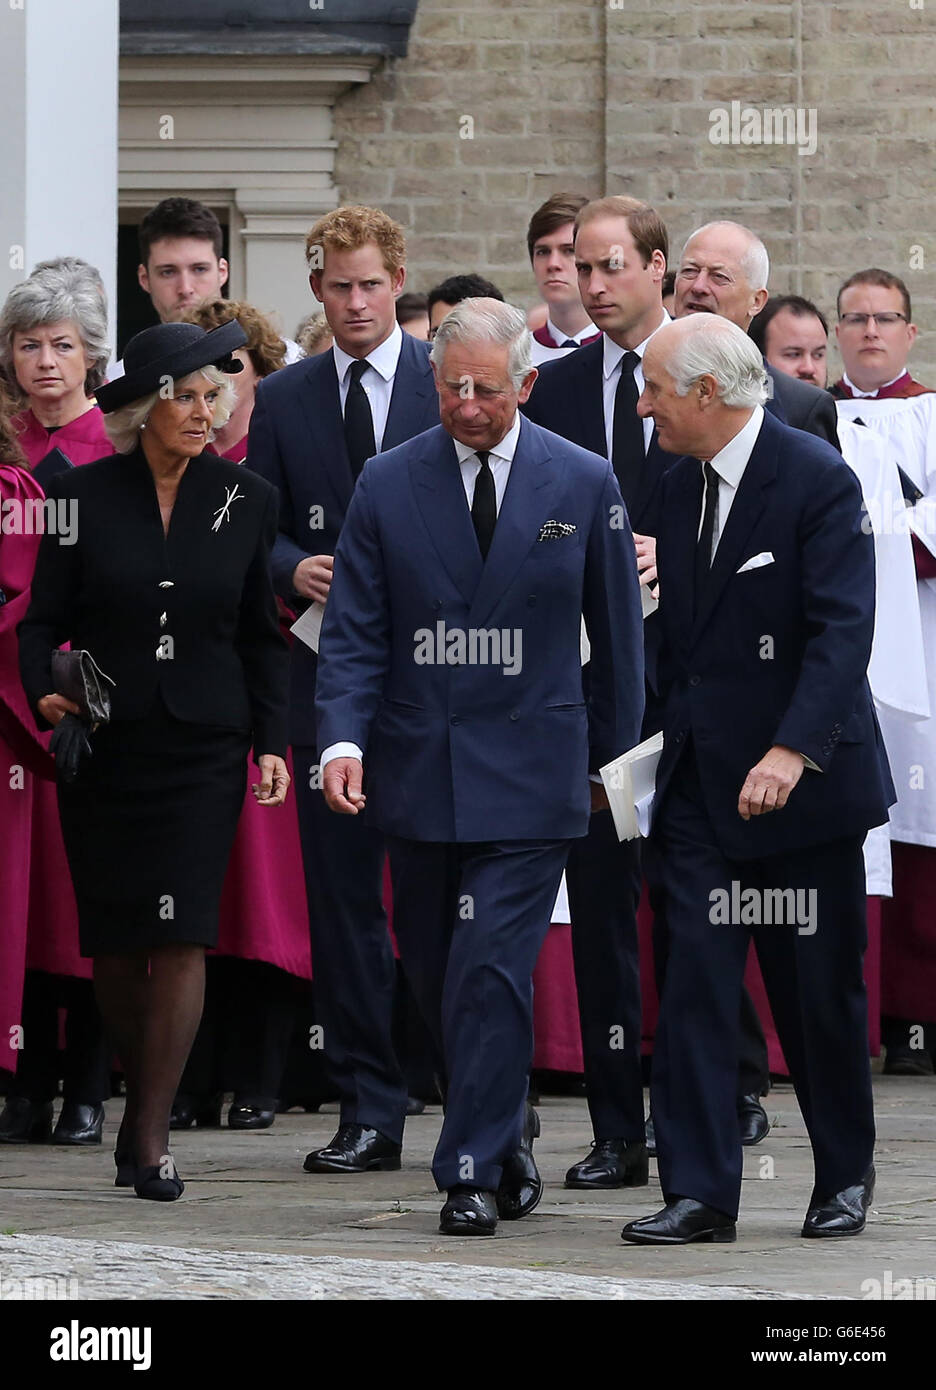 Le prince de Galles accompagné de la duchesse de Cornouailles, le duc de Cambridge et le prince Harry arrivent à la cathédrale Saint Mary et Sainte Helen à Brentwood, Essex, pour les funérailles de Hugh van Cutsem. Banque D'Images